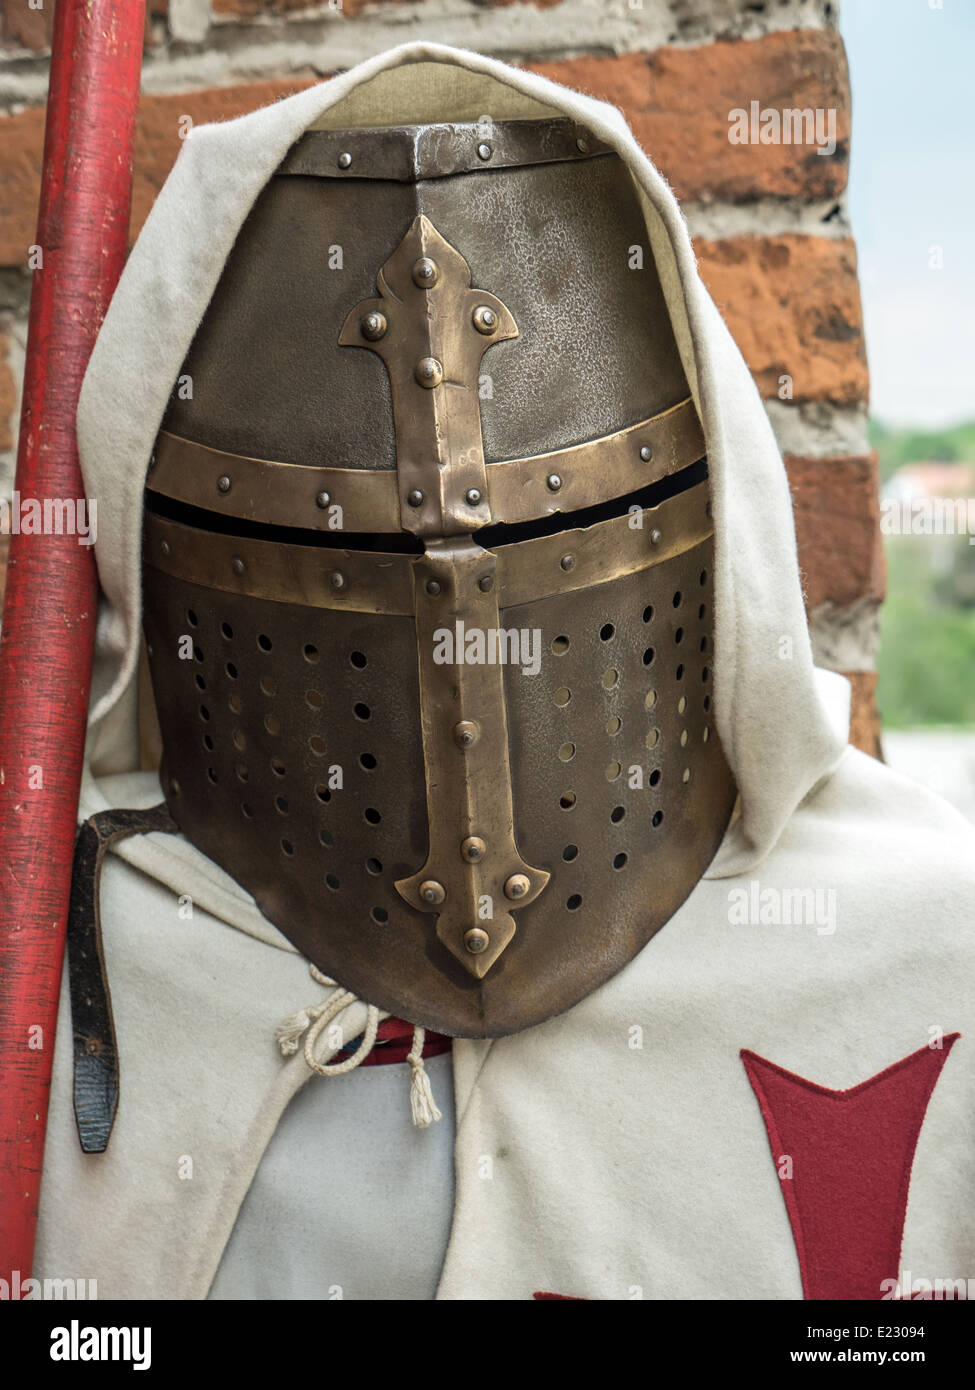 Caballero de Hierro medieval del casco burgonet Foto de stock